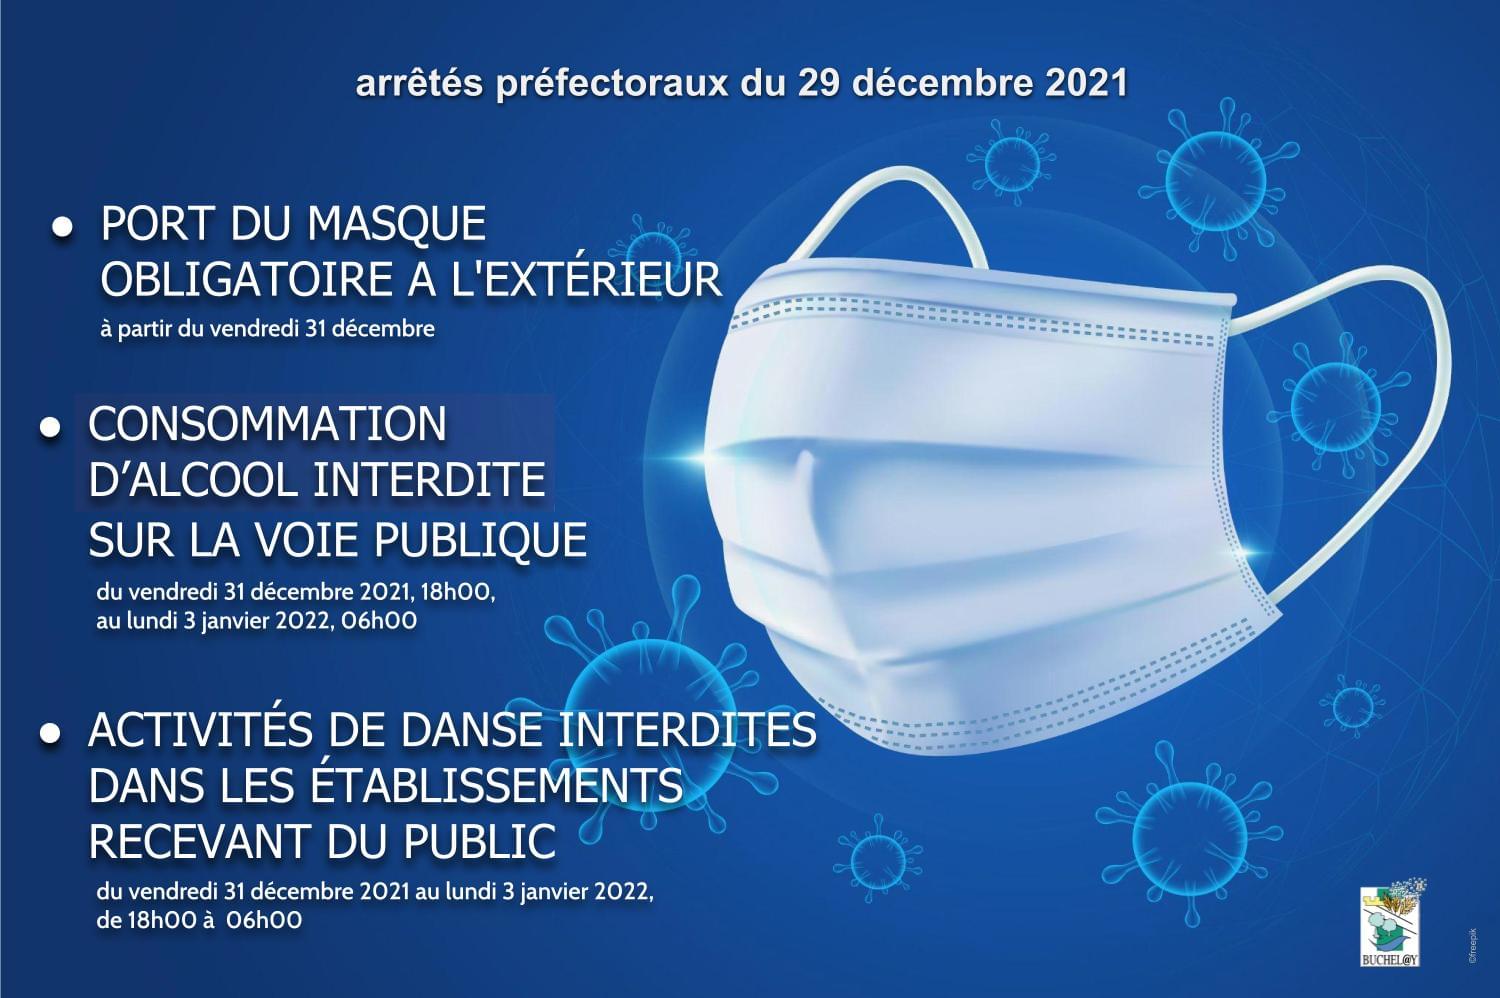 Le port du masque est obligatoire dans l’espace public dès le 31 décembre 2021